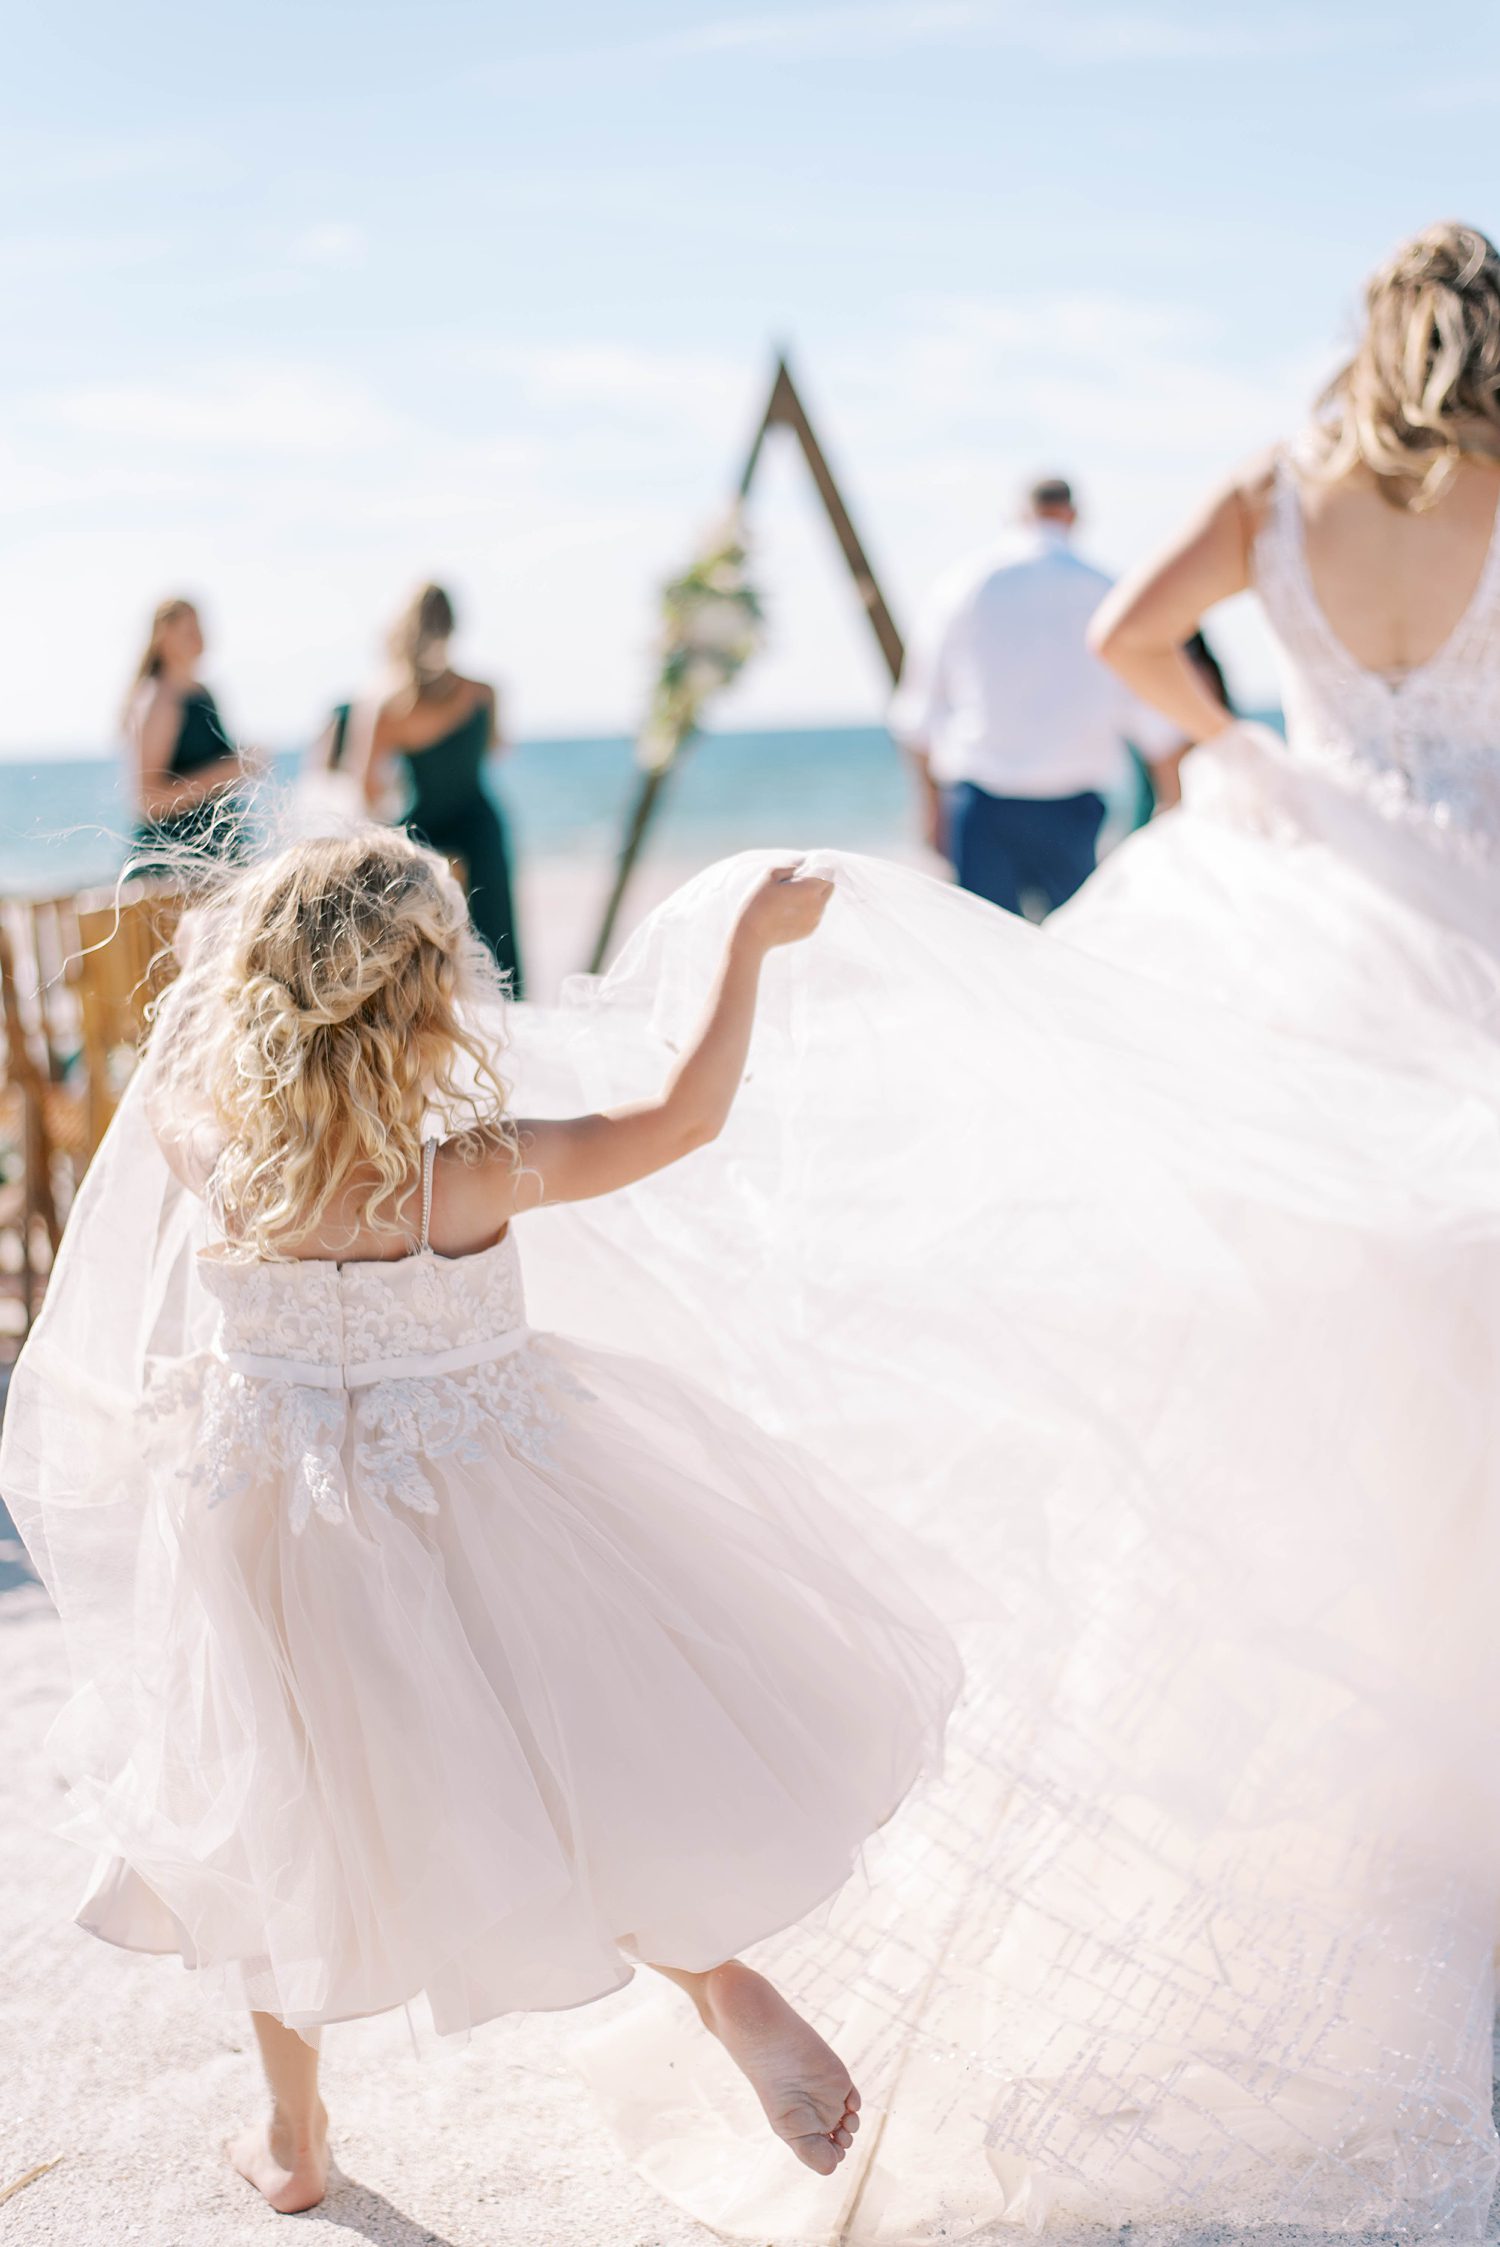 flower girl lifts up bride's wedding dress skirt on beach